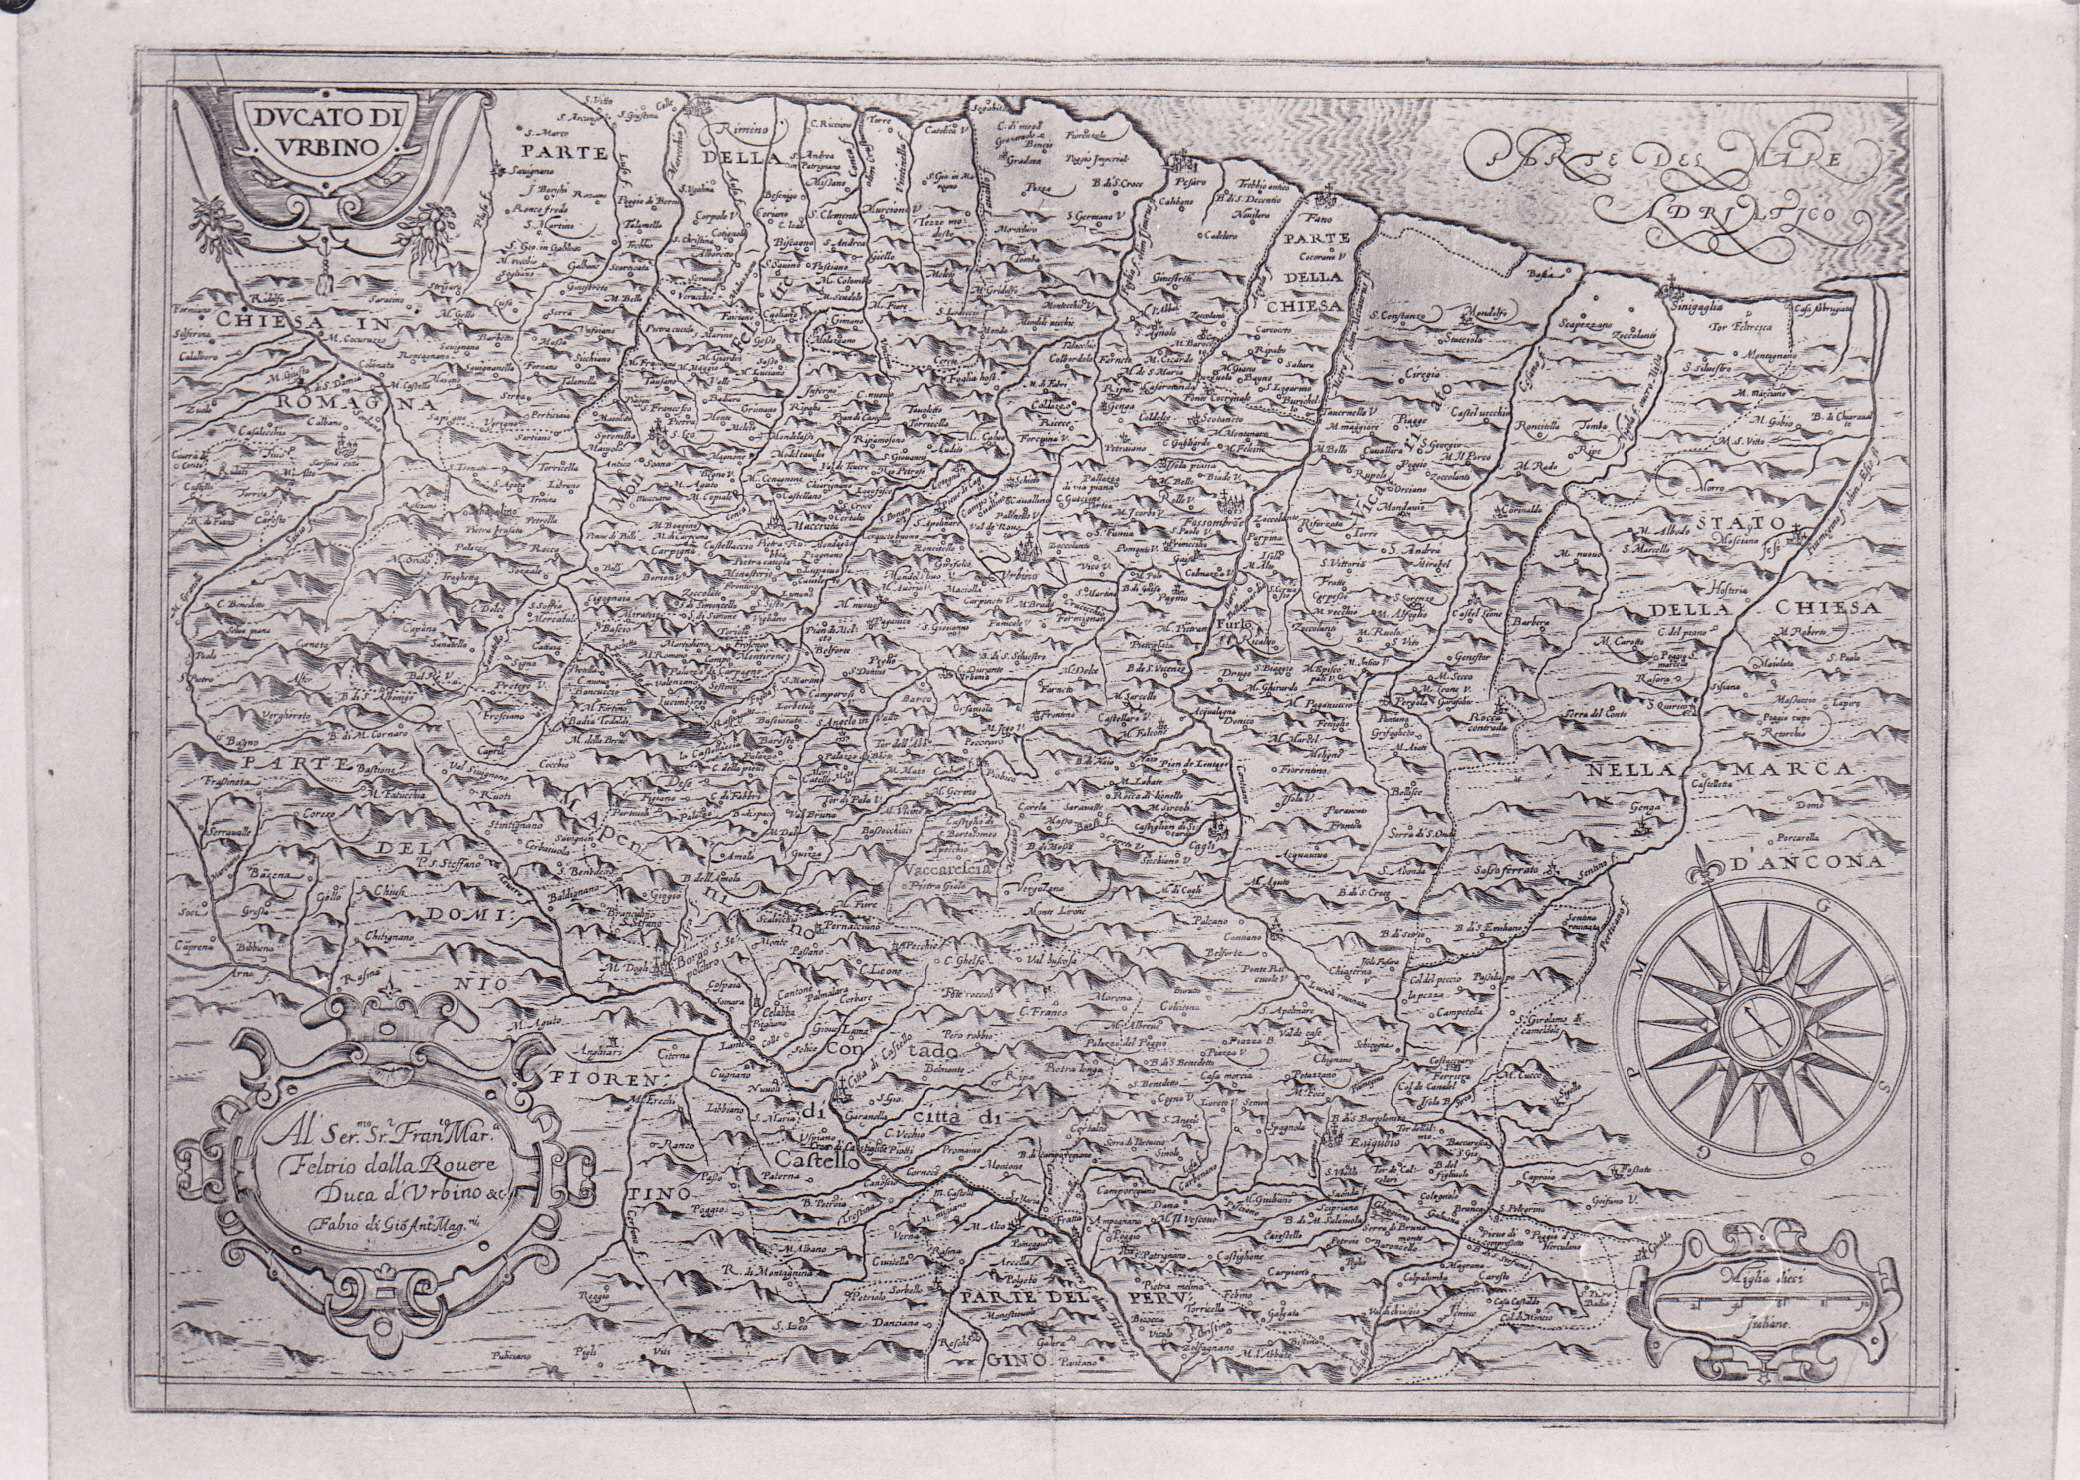 Ducato di Urbino, carta geografica del Ducato di Urbino (stampa) di Magini Fabio di Giovanni Antonio (XVII)